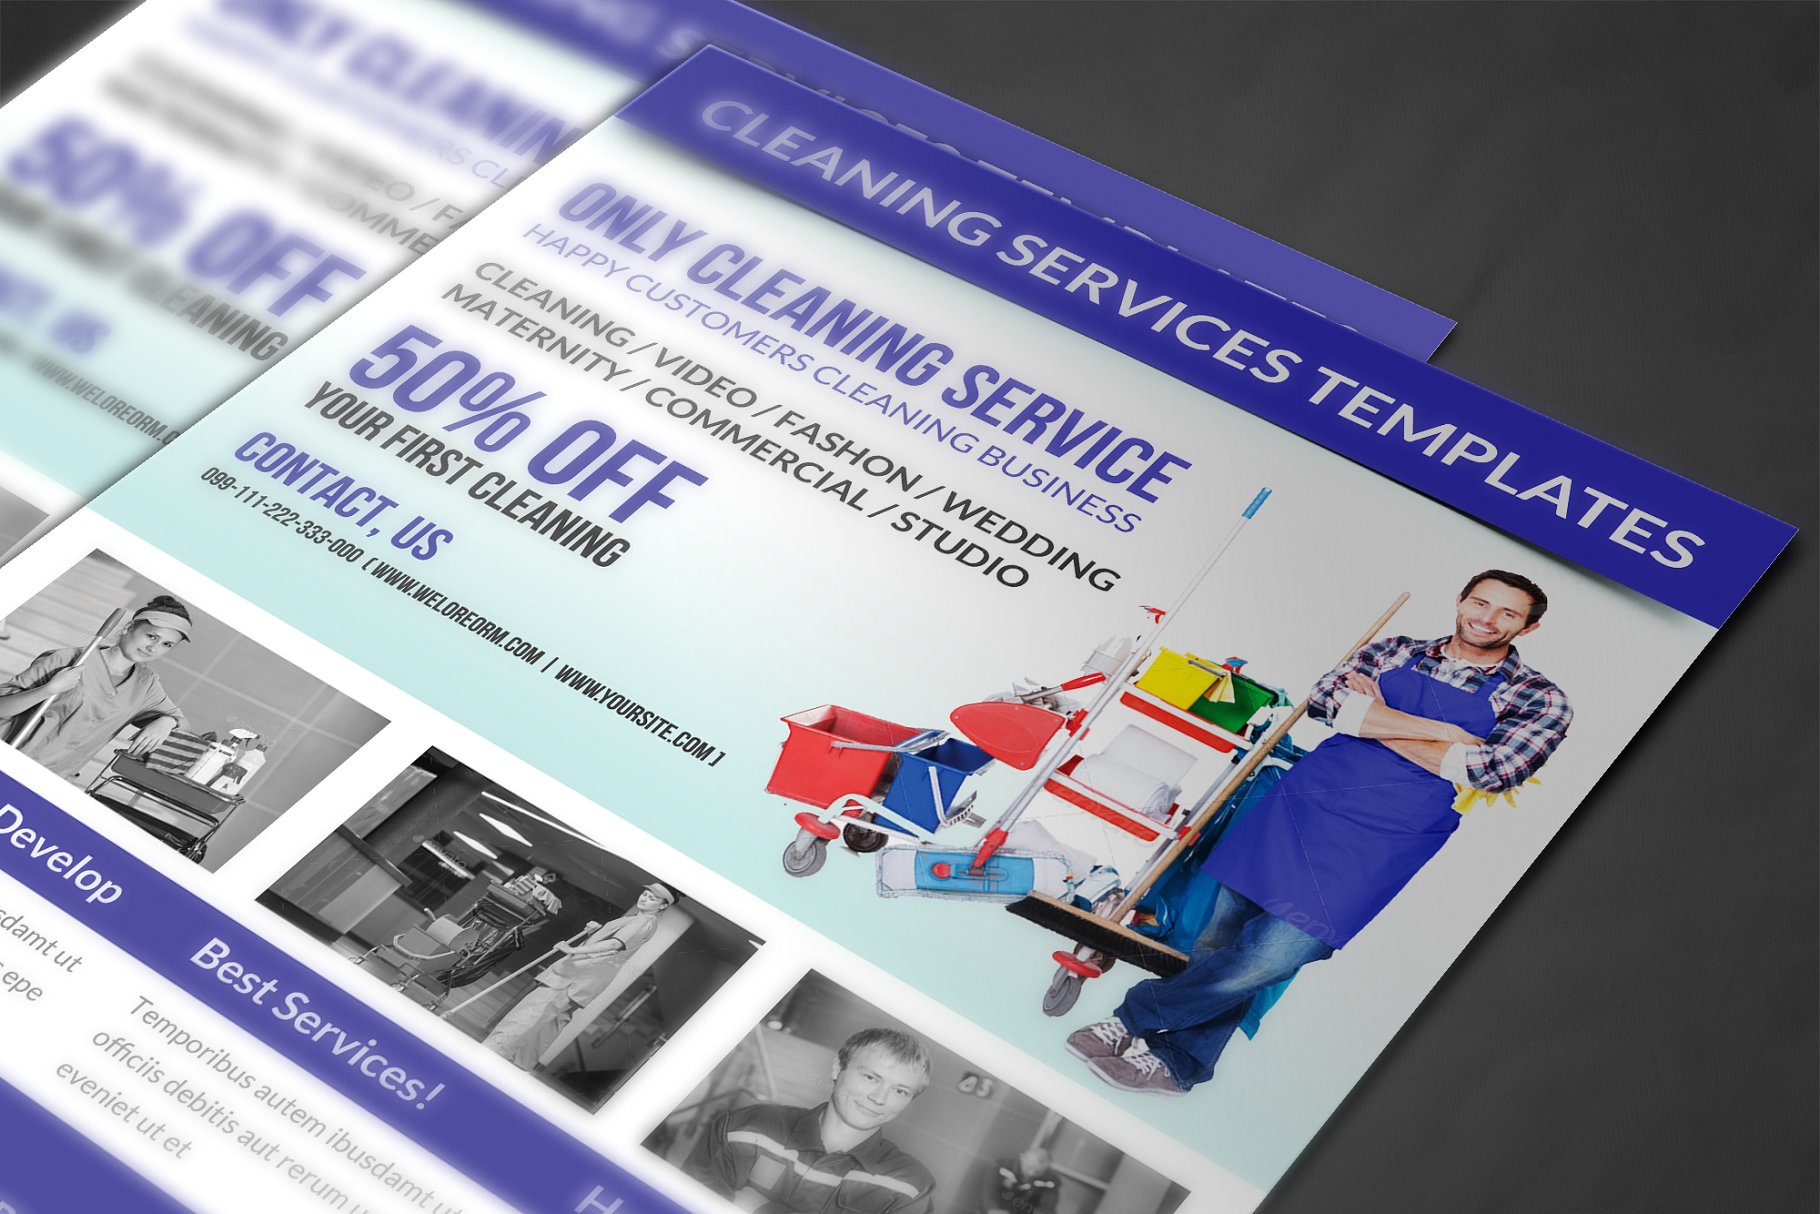 清洁工公司保洁服务宣传海报设计模板 Cleaning Services Flyer Template插图(3)